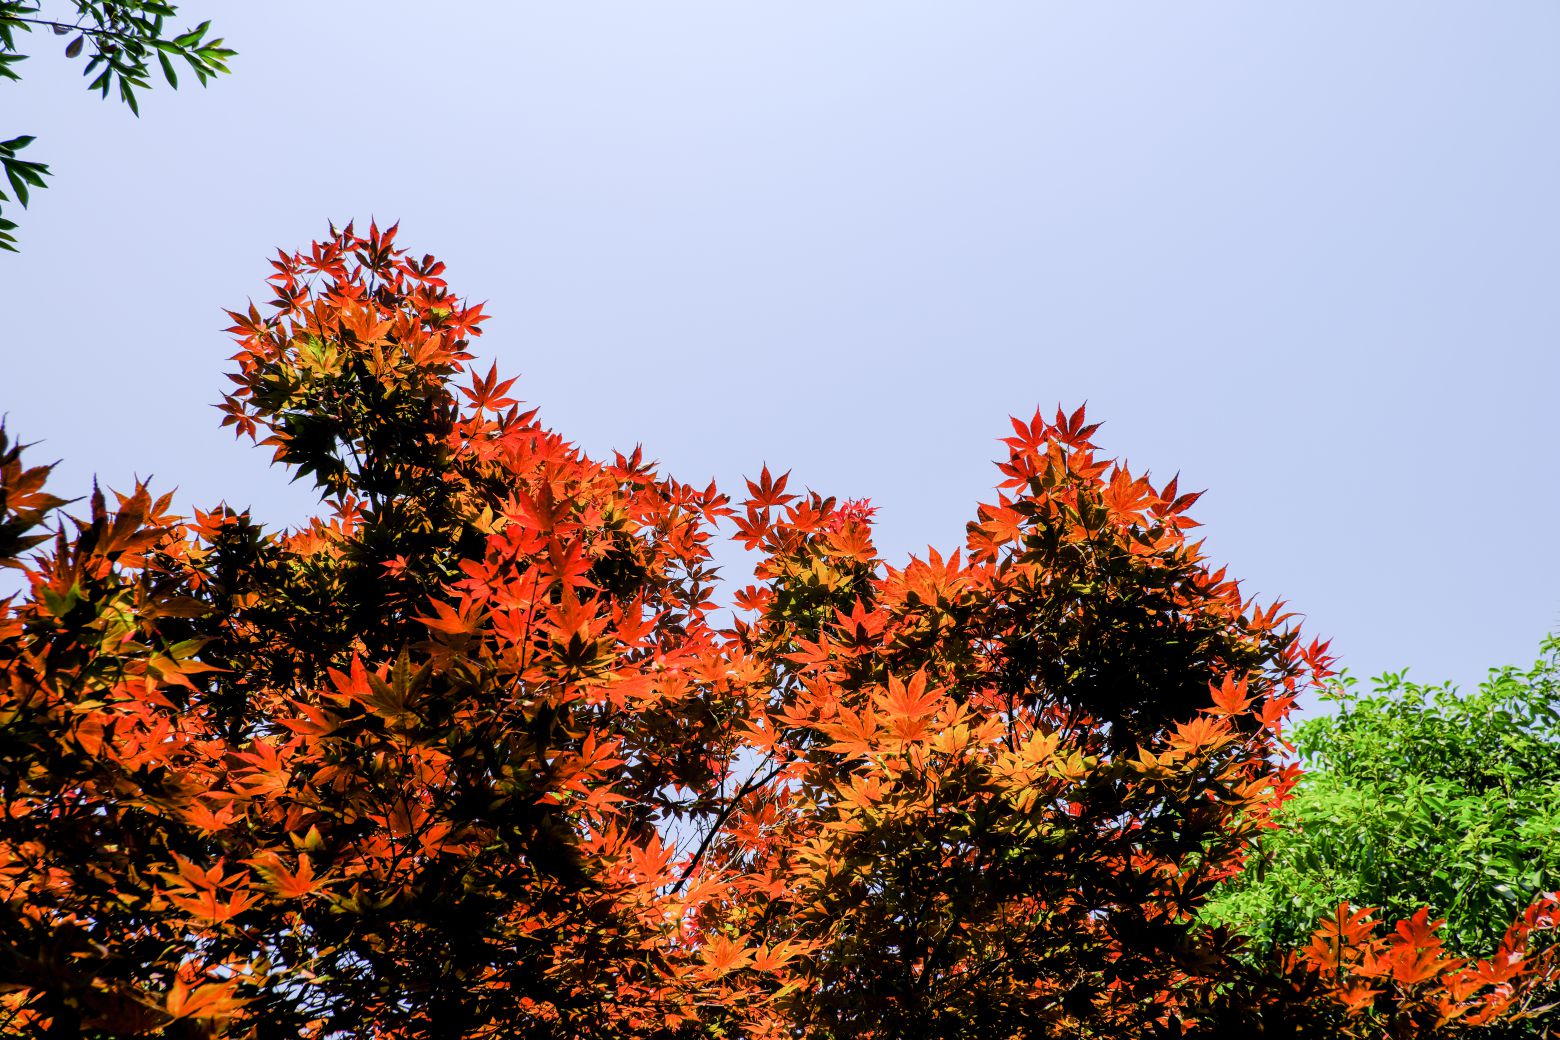 枫叶、红色枫叶背景图片 - 免费商用照片下载